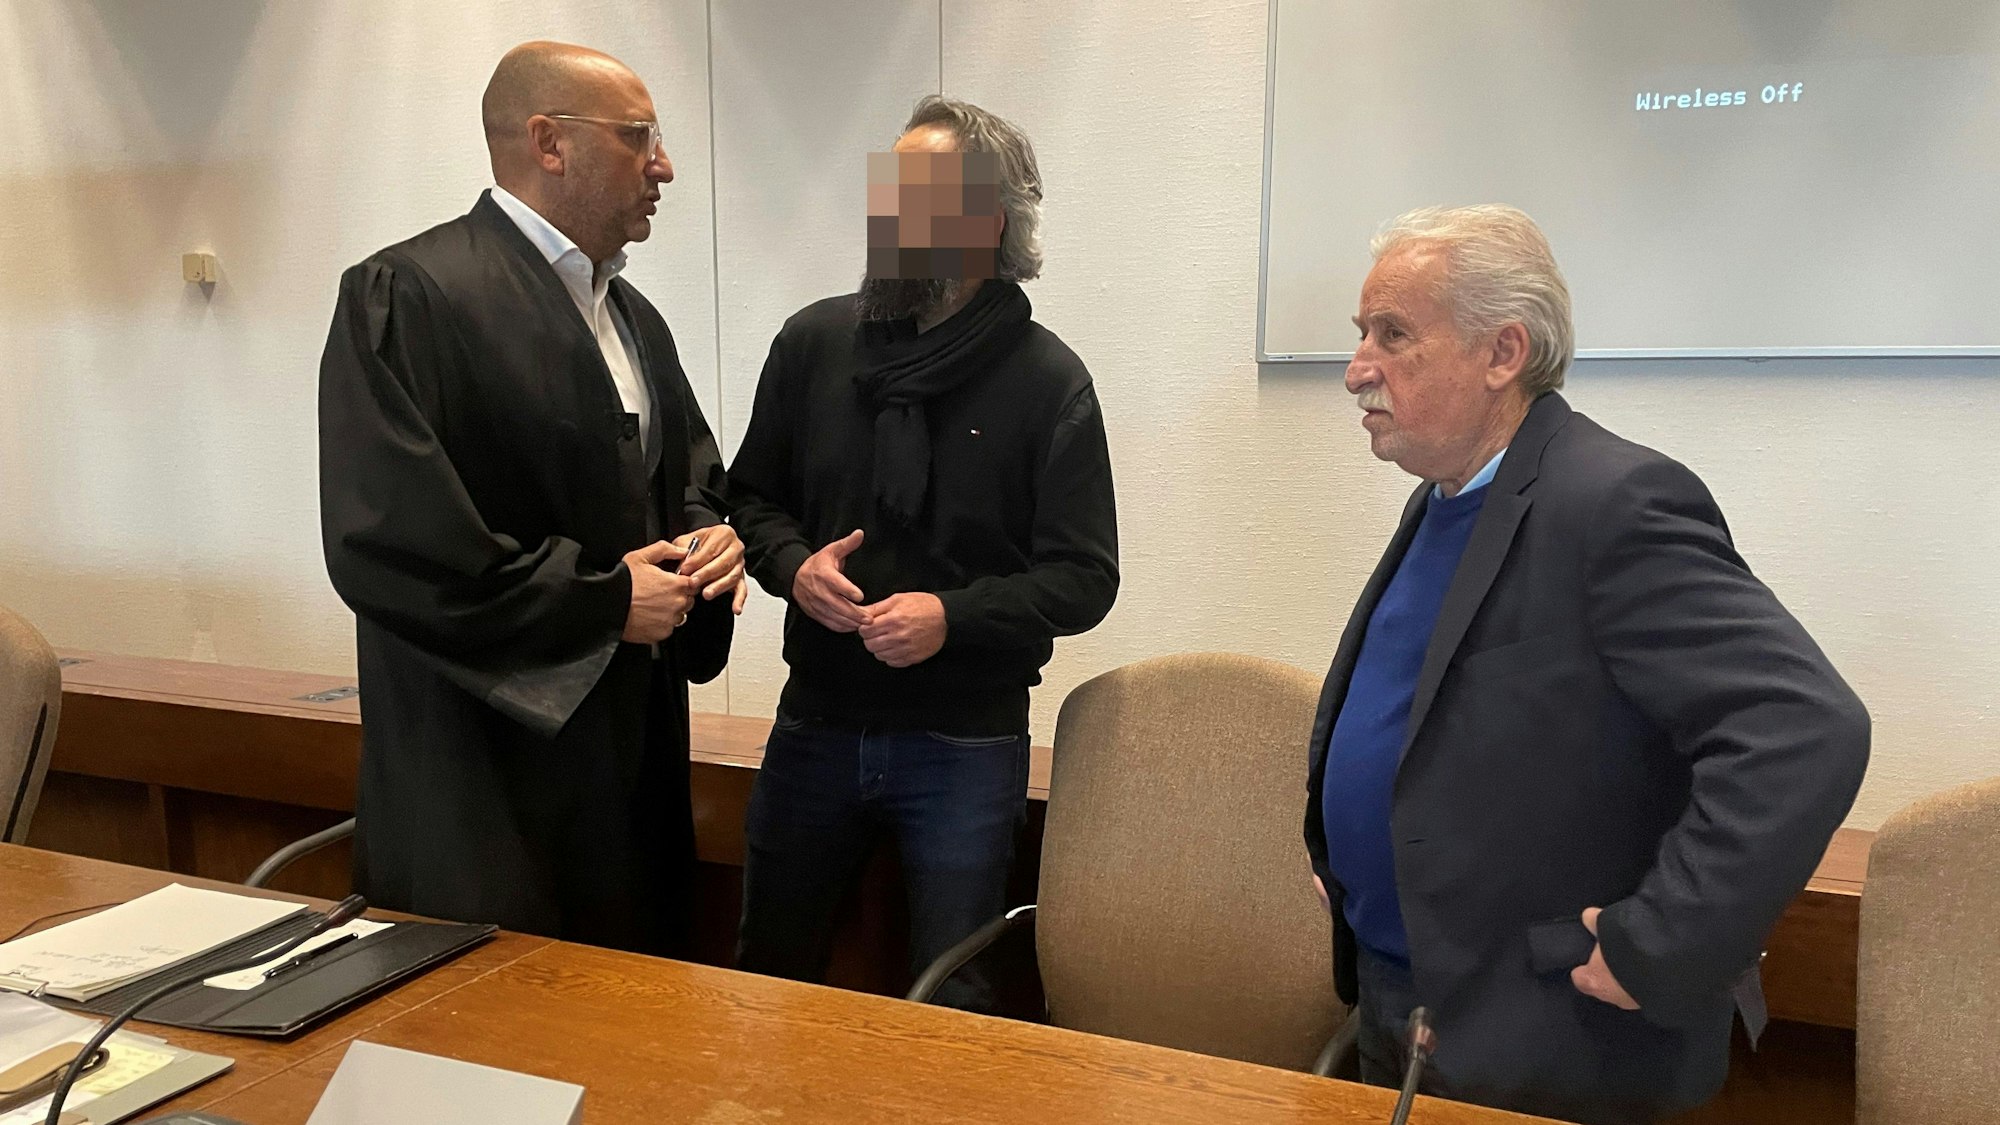 Der Angeklagte mit Verteidiger Abdou Gabbar und Dolmetscher Bahadir Aksungur im Gerichtssaal, die Männer stehen an einem Tisch